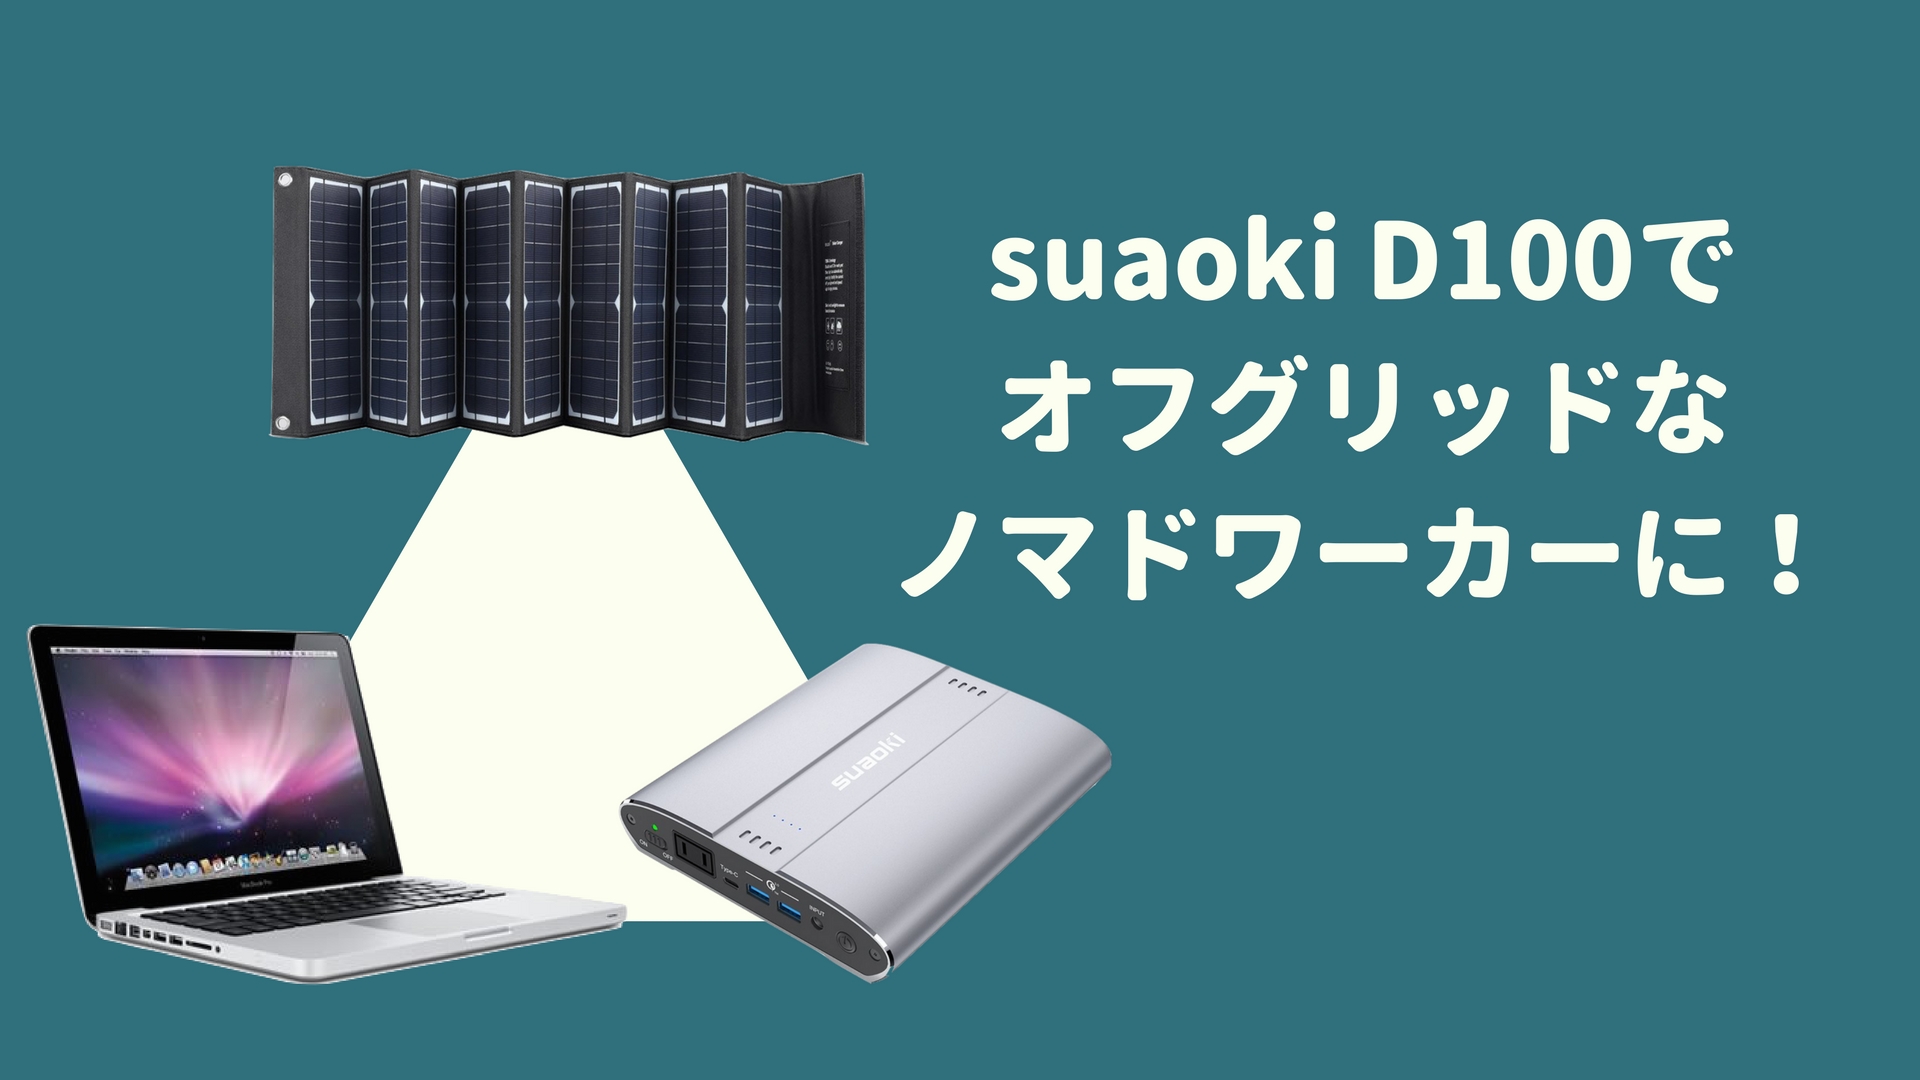 モバイルバッテリーとポータブル電源の間〜suaoki D100は全てが”ちょうどいい”